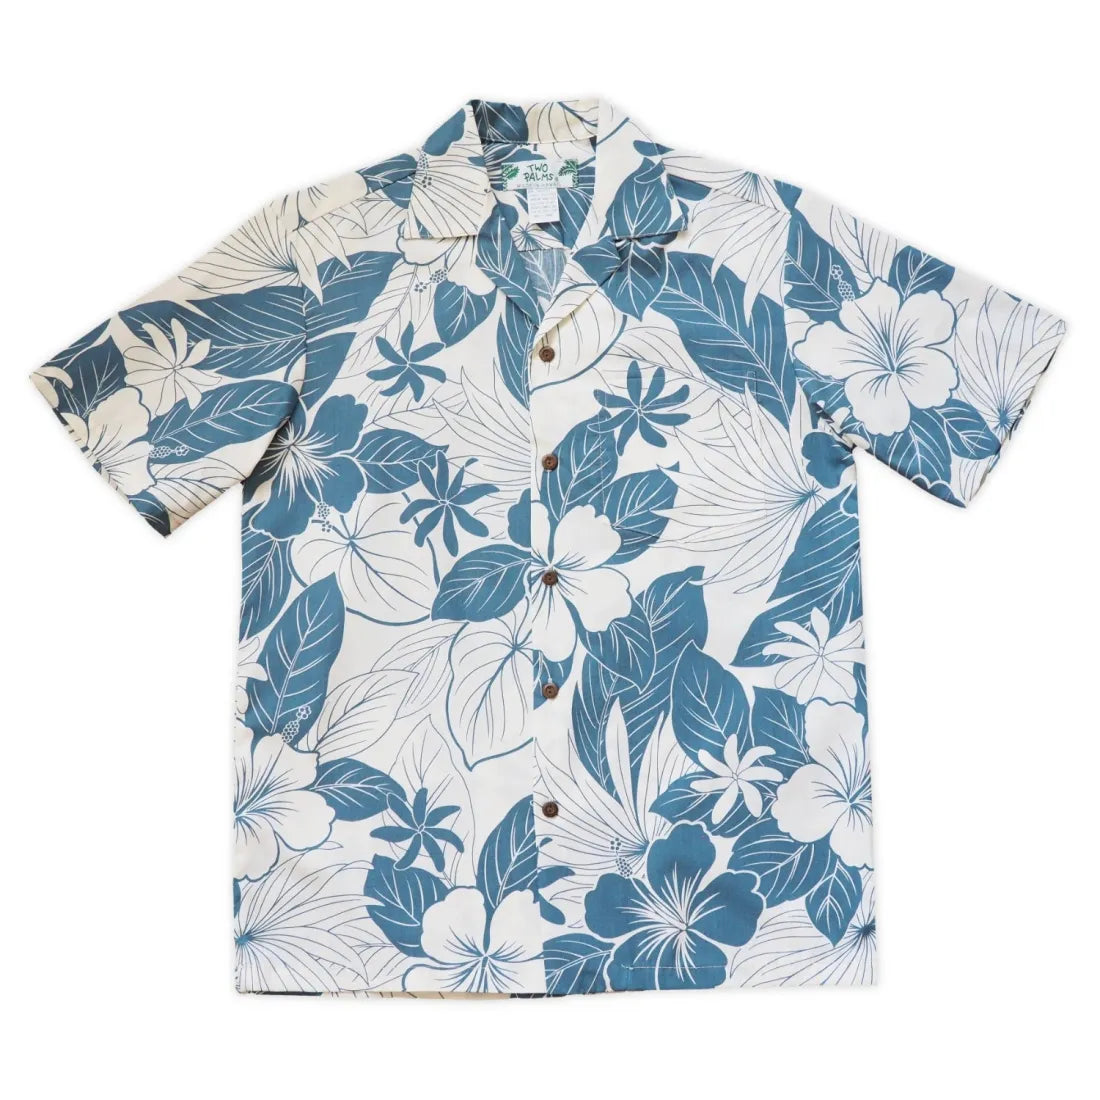 Haven Blue Hawaiian Cotton Shirt - Made In Hawaii